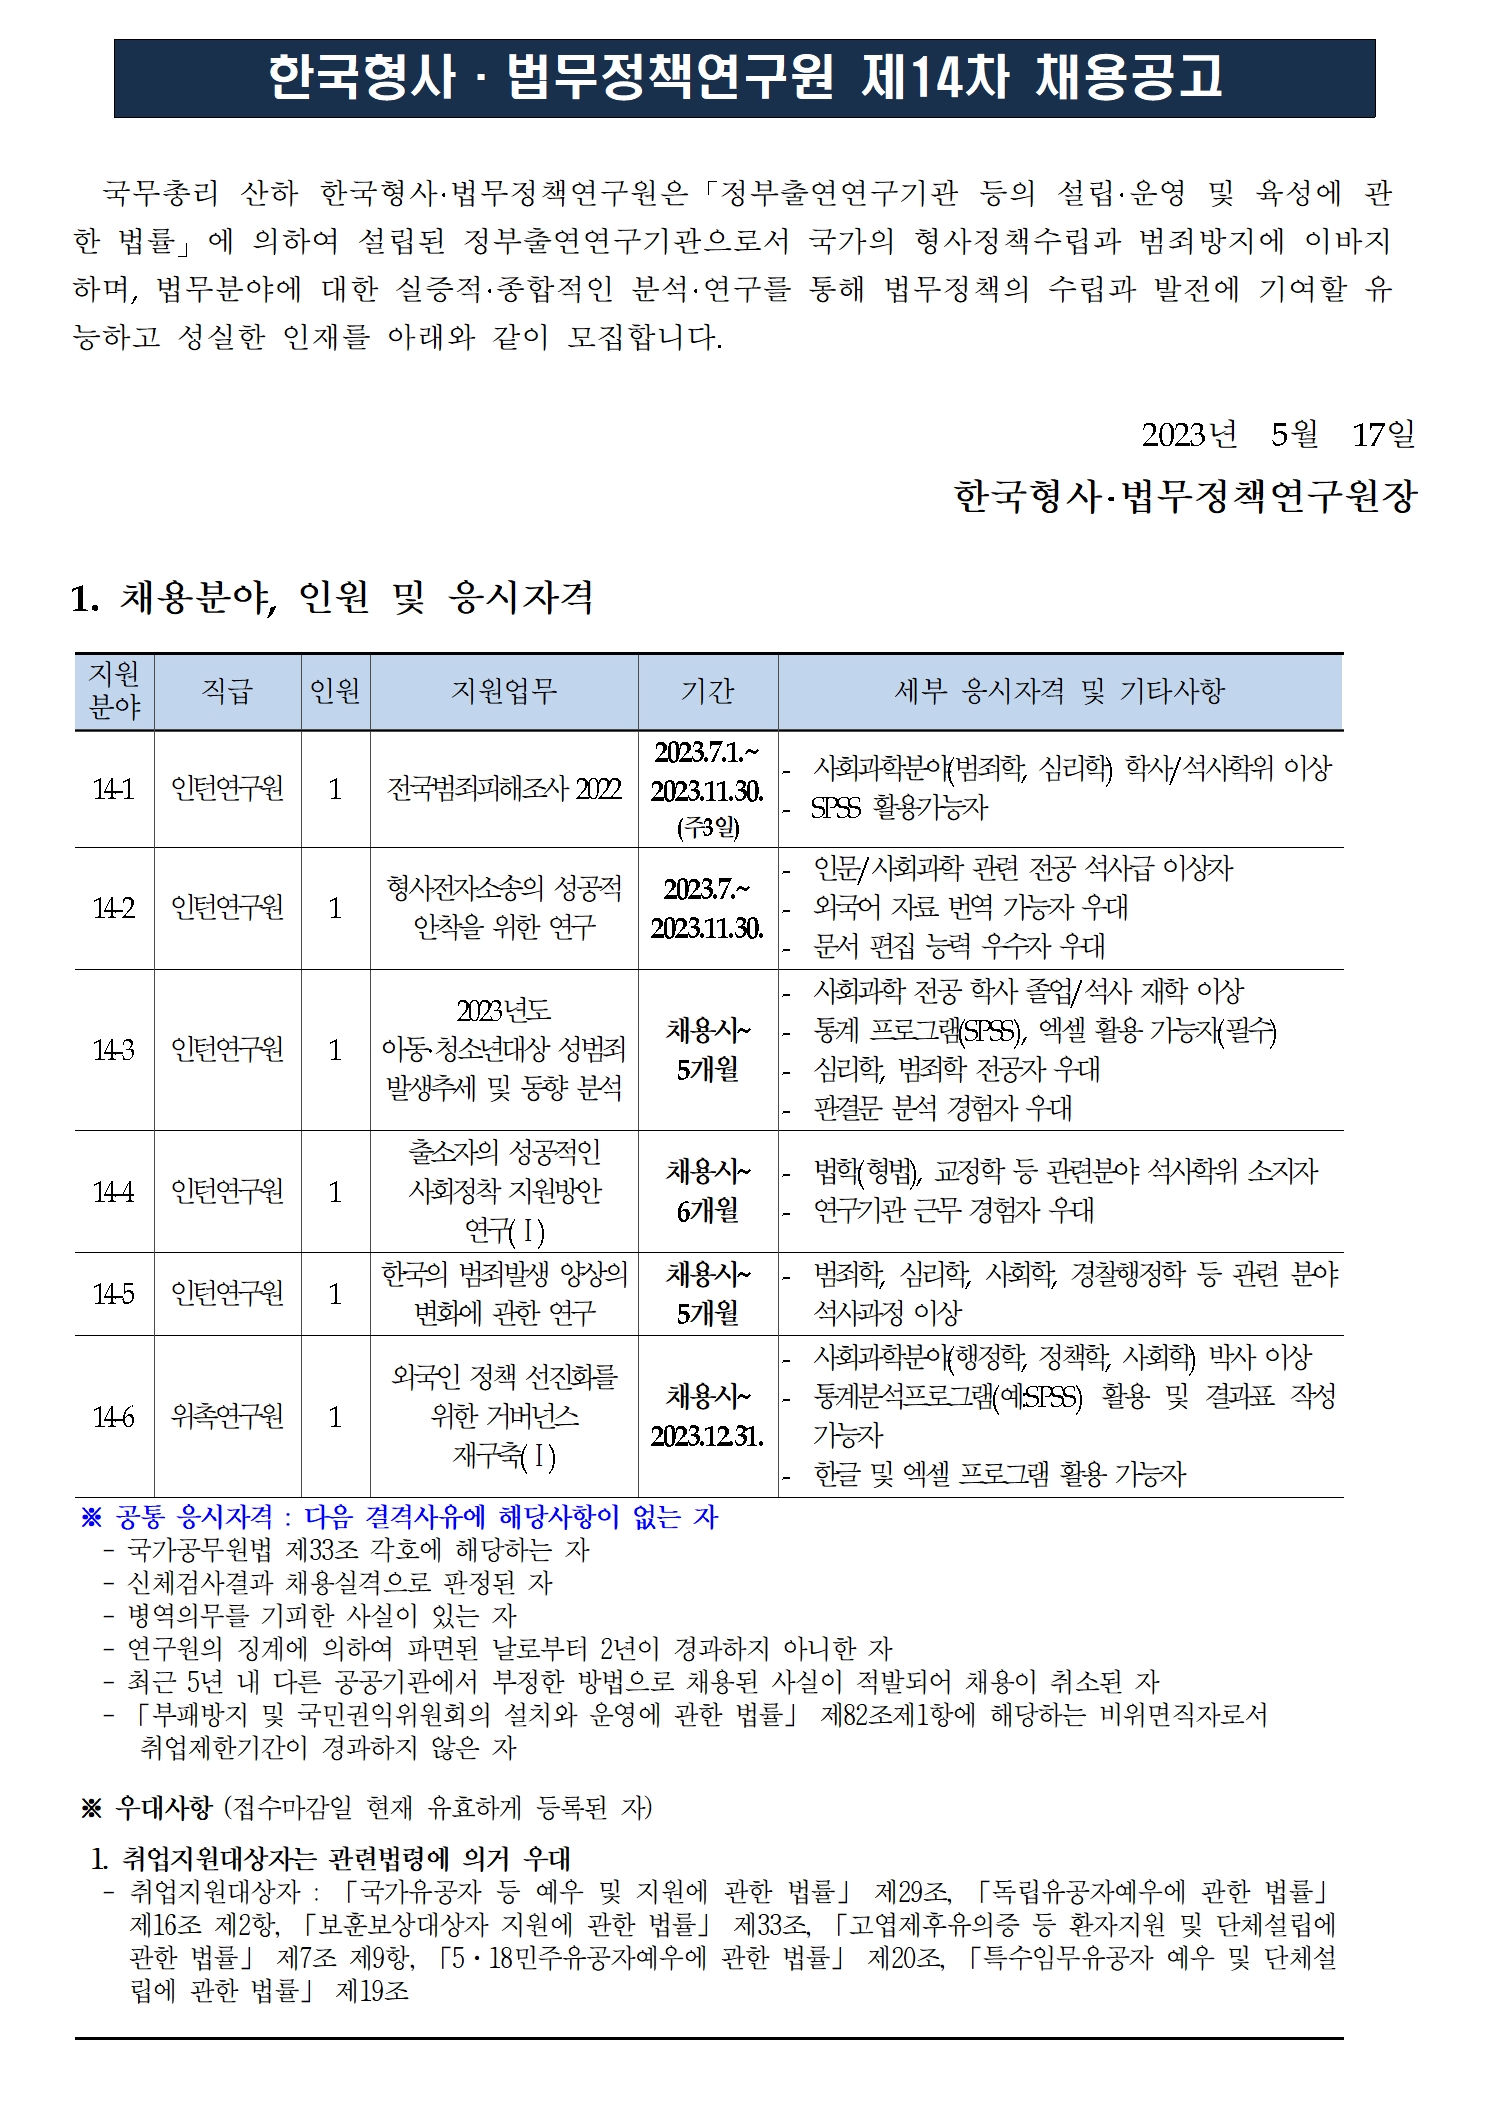 (1/3) 한국형사·법무정책연구원 제14차 채용공고 - 자세한 내용은 하단 참조